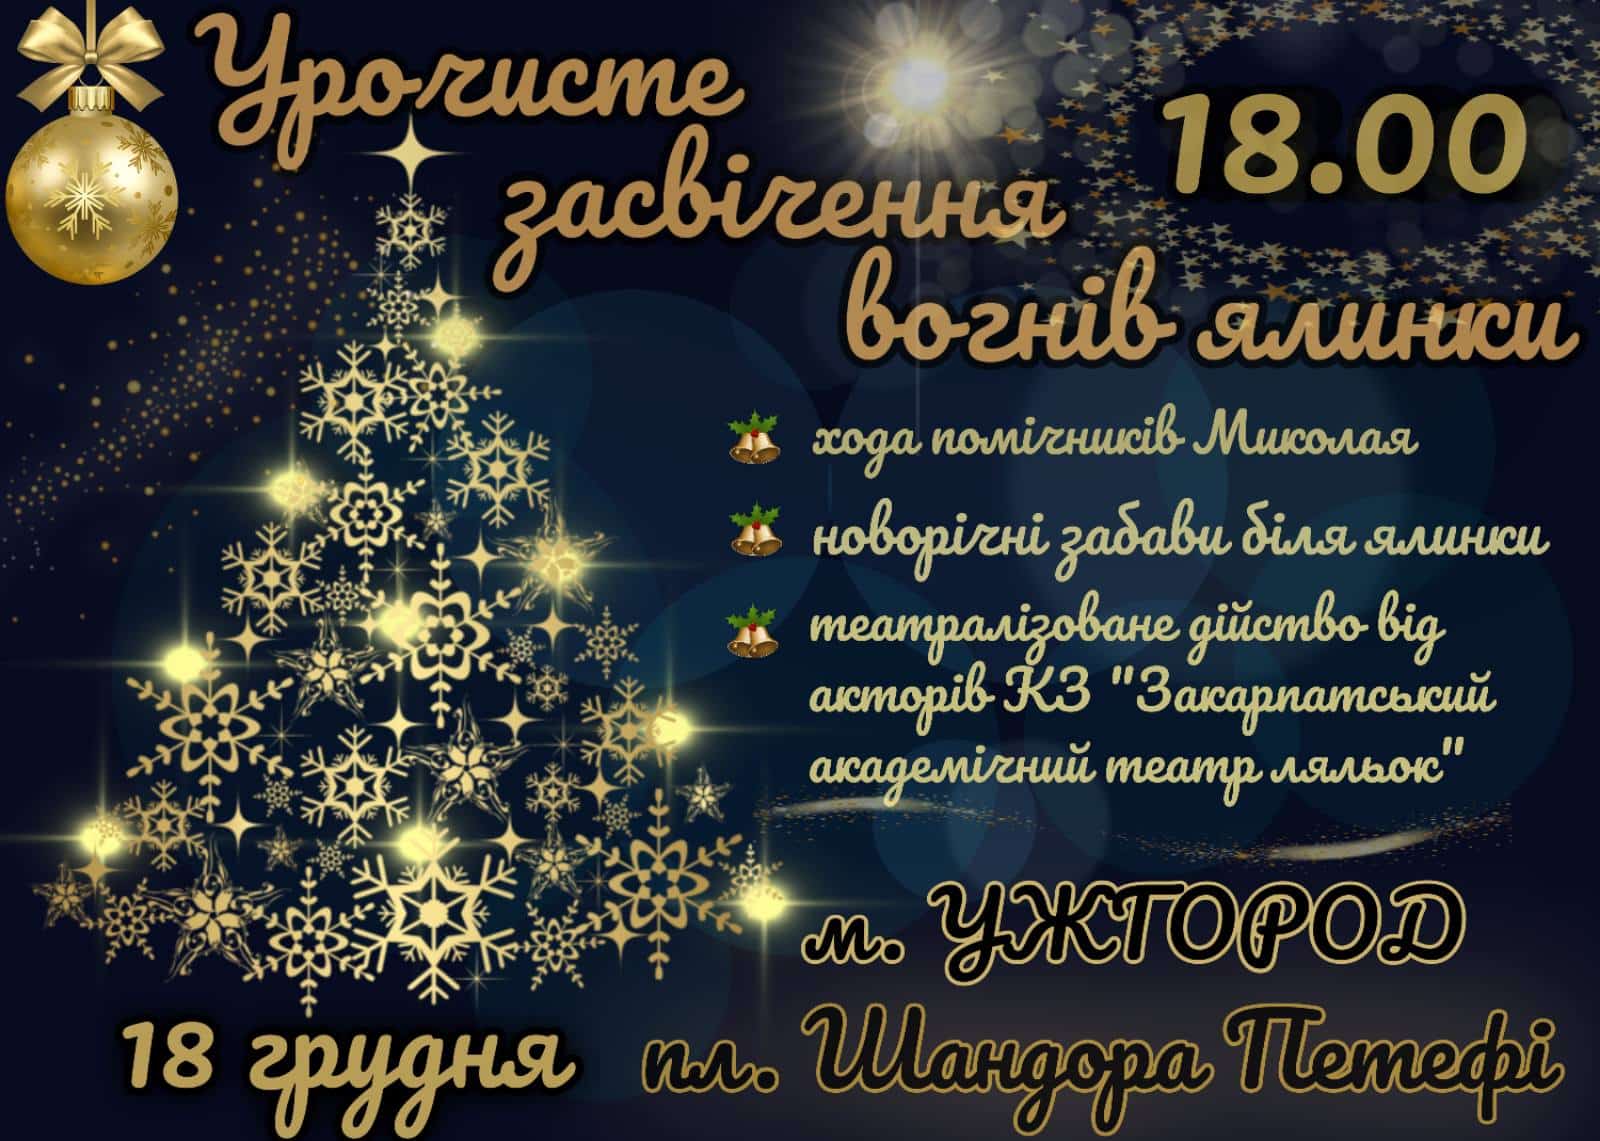 Вогні головної новорічної ялинки Ужгорода засяють у суботу 18 грудня, на площі Шандора Петефі